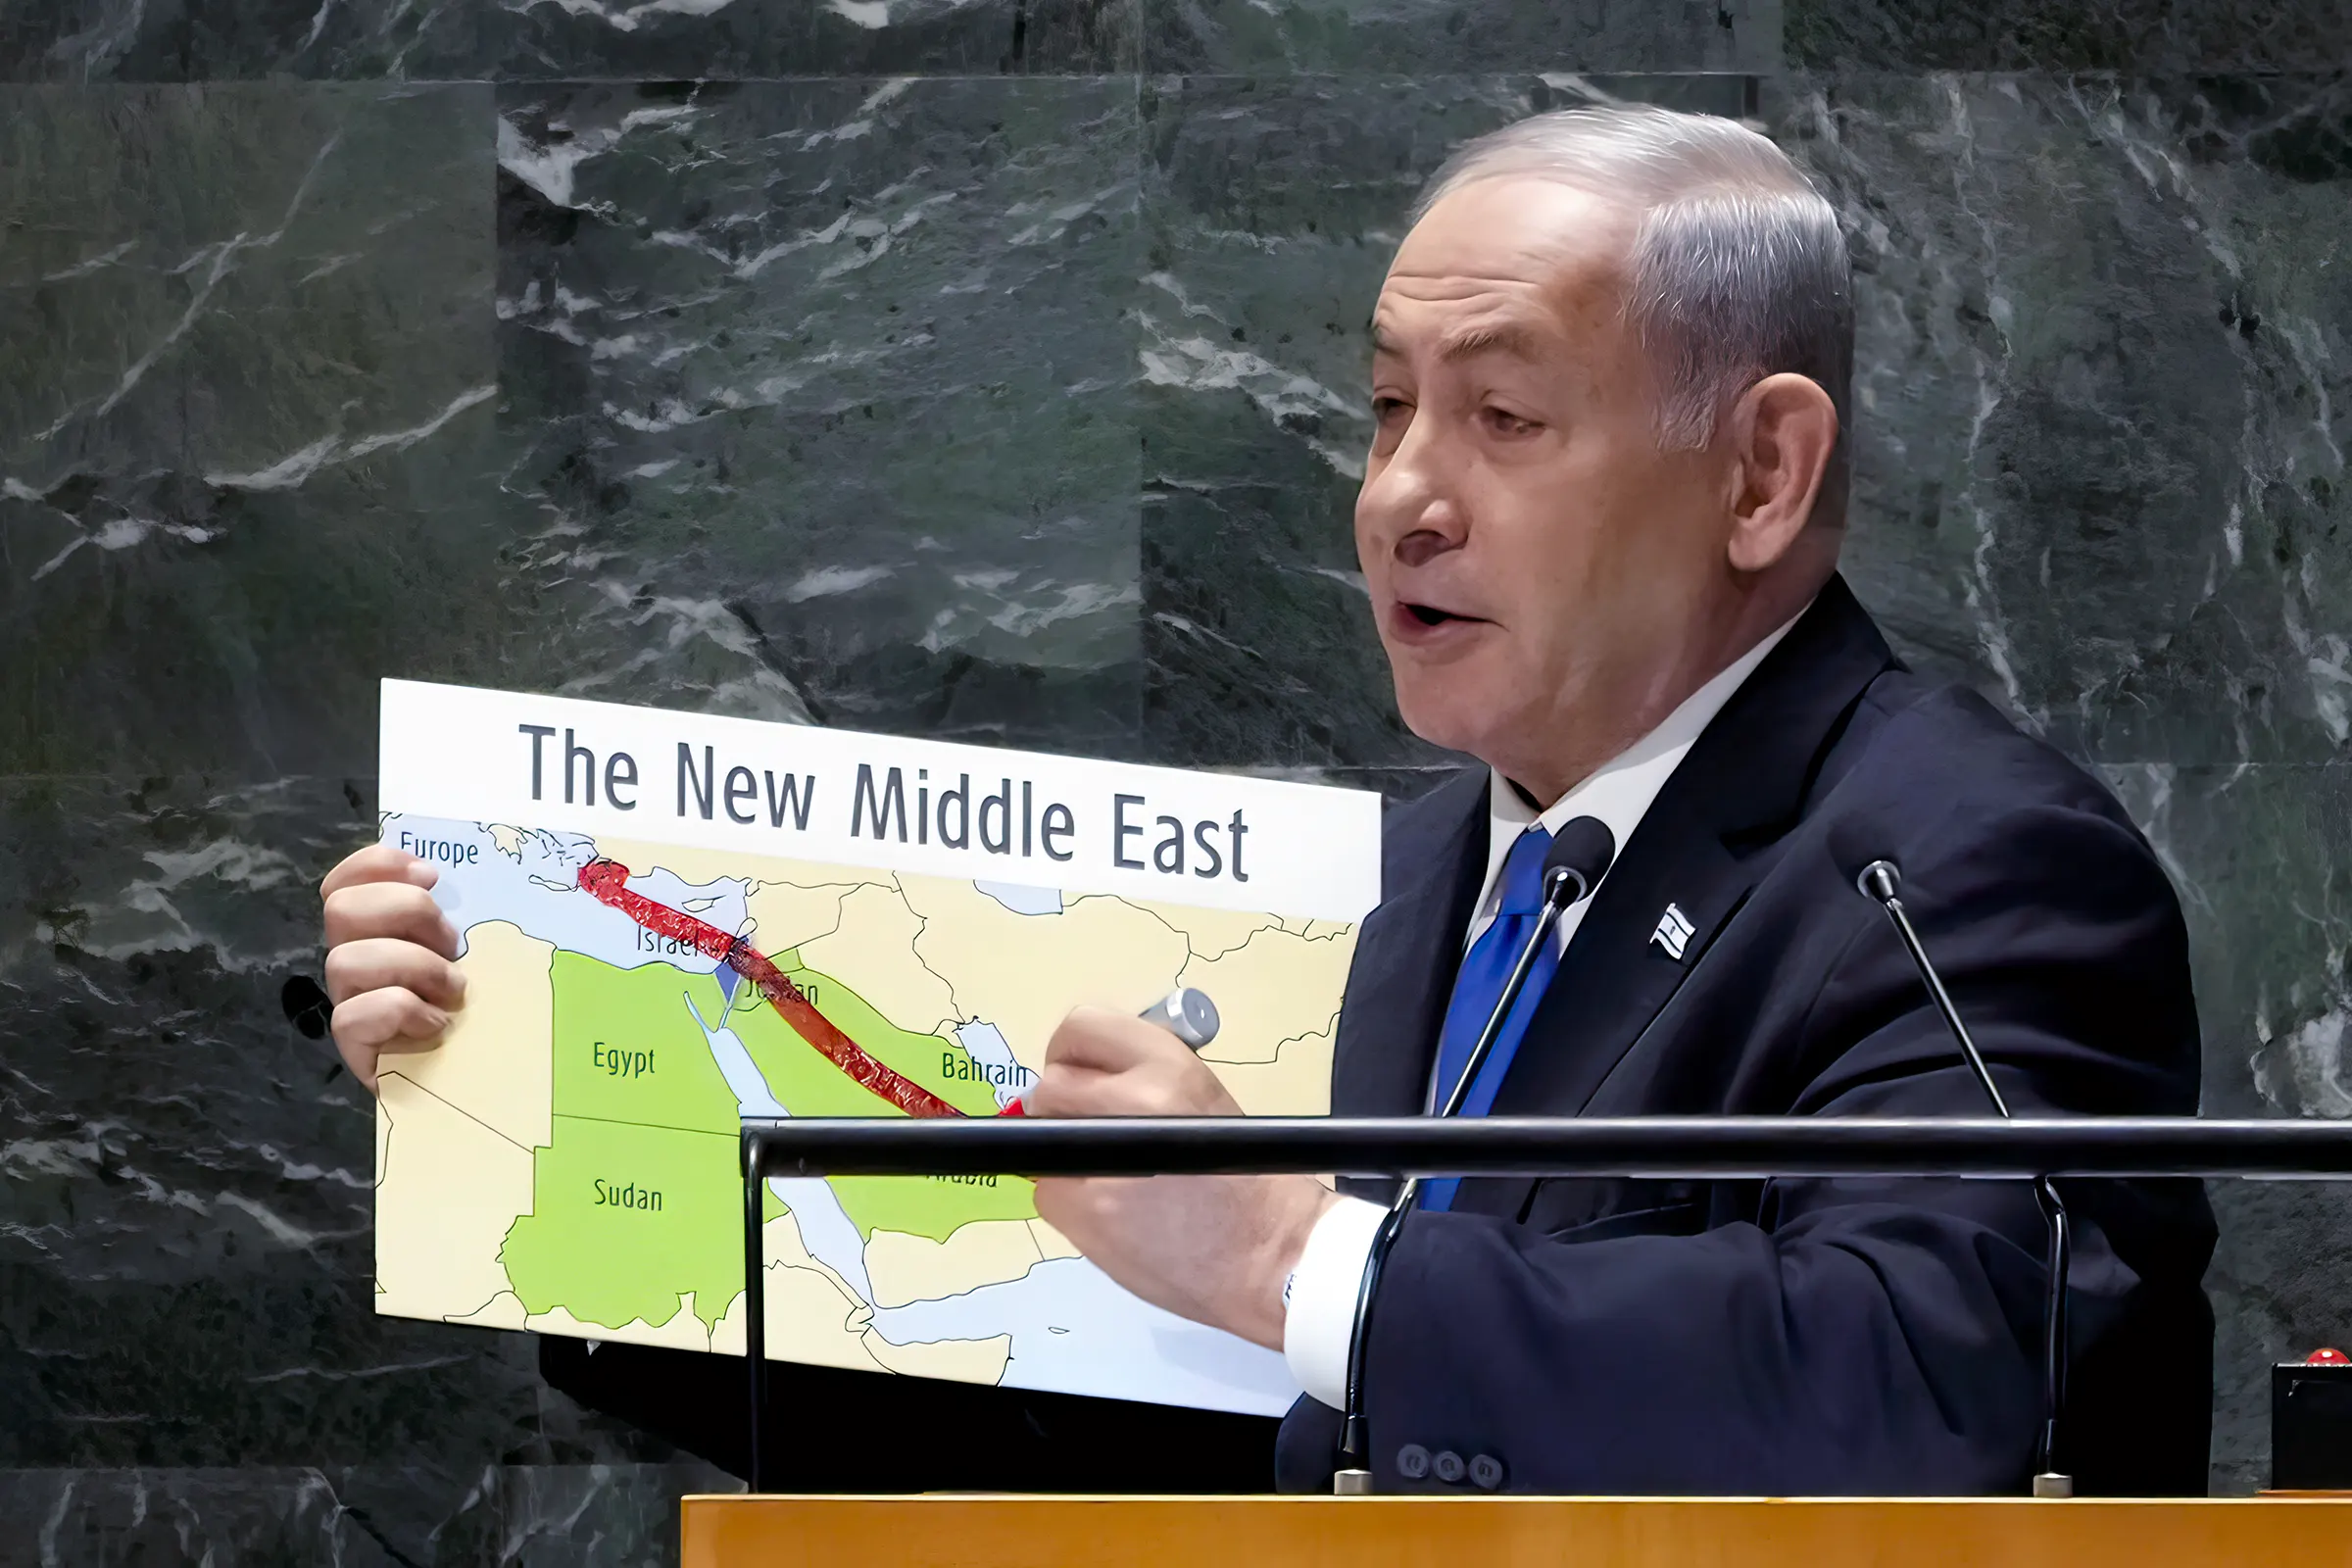 Texto del discurso completo de Netanyahu en la ONU